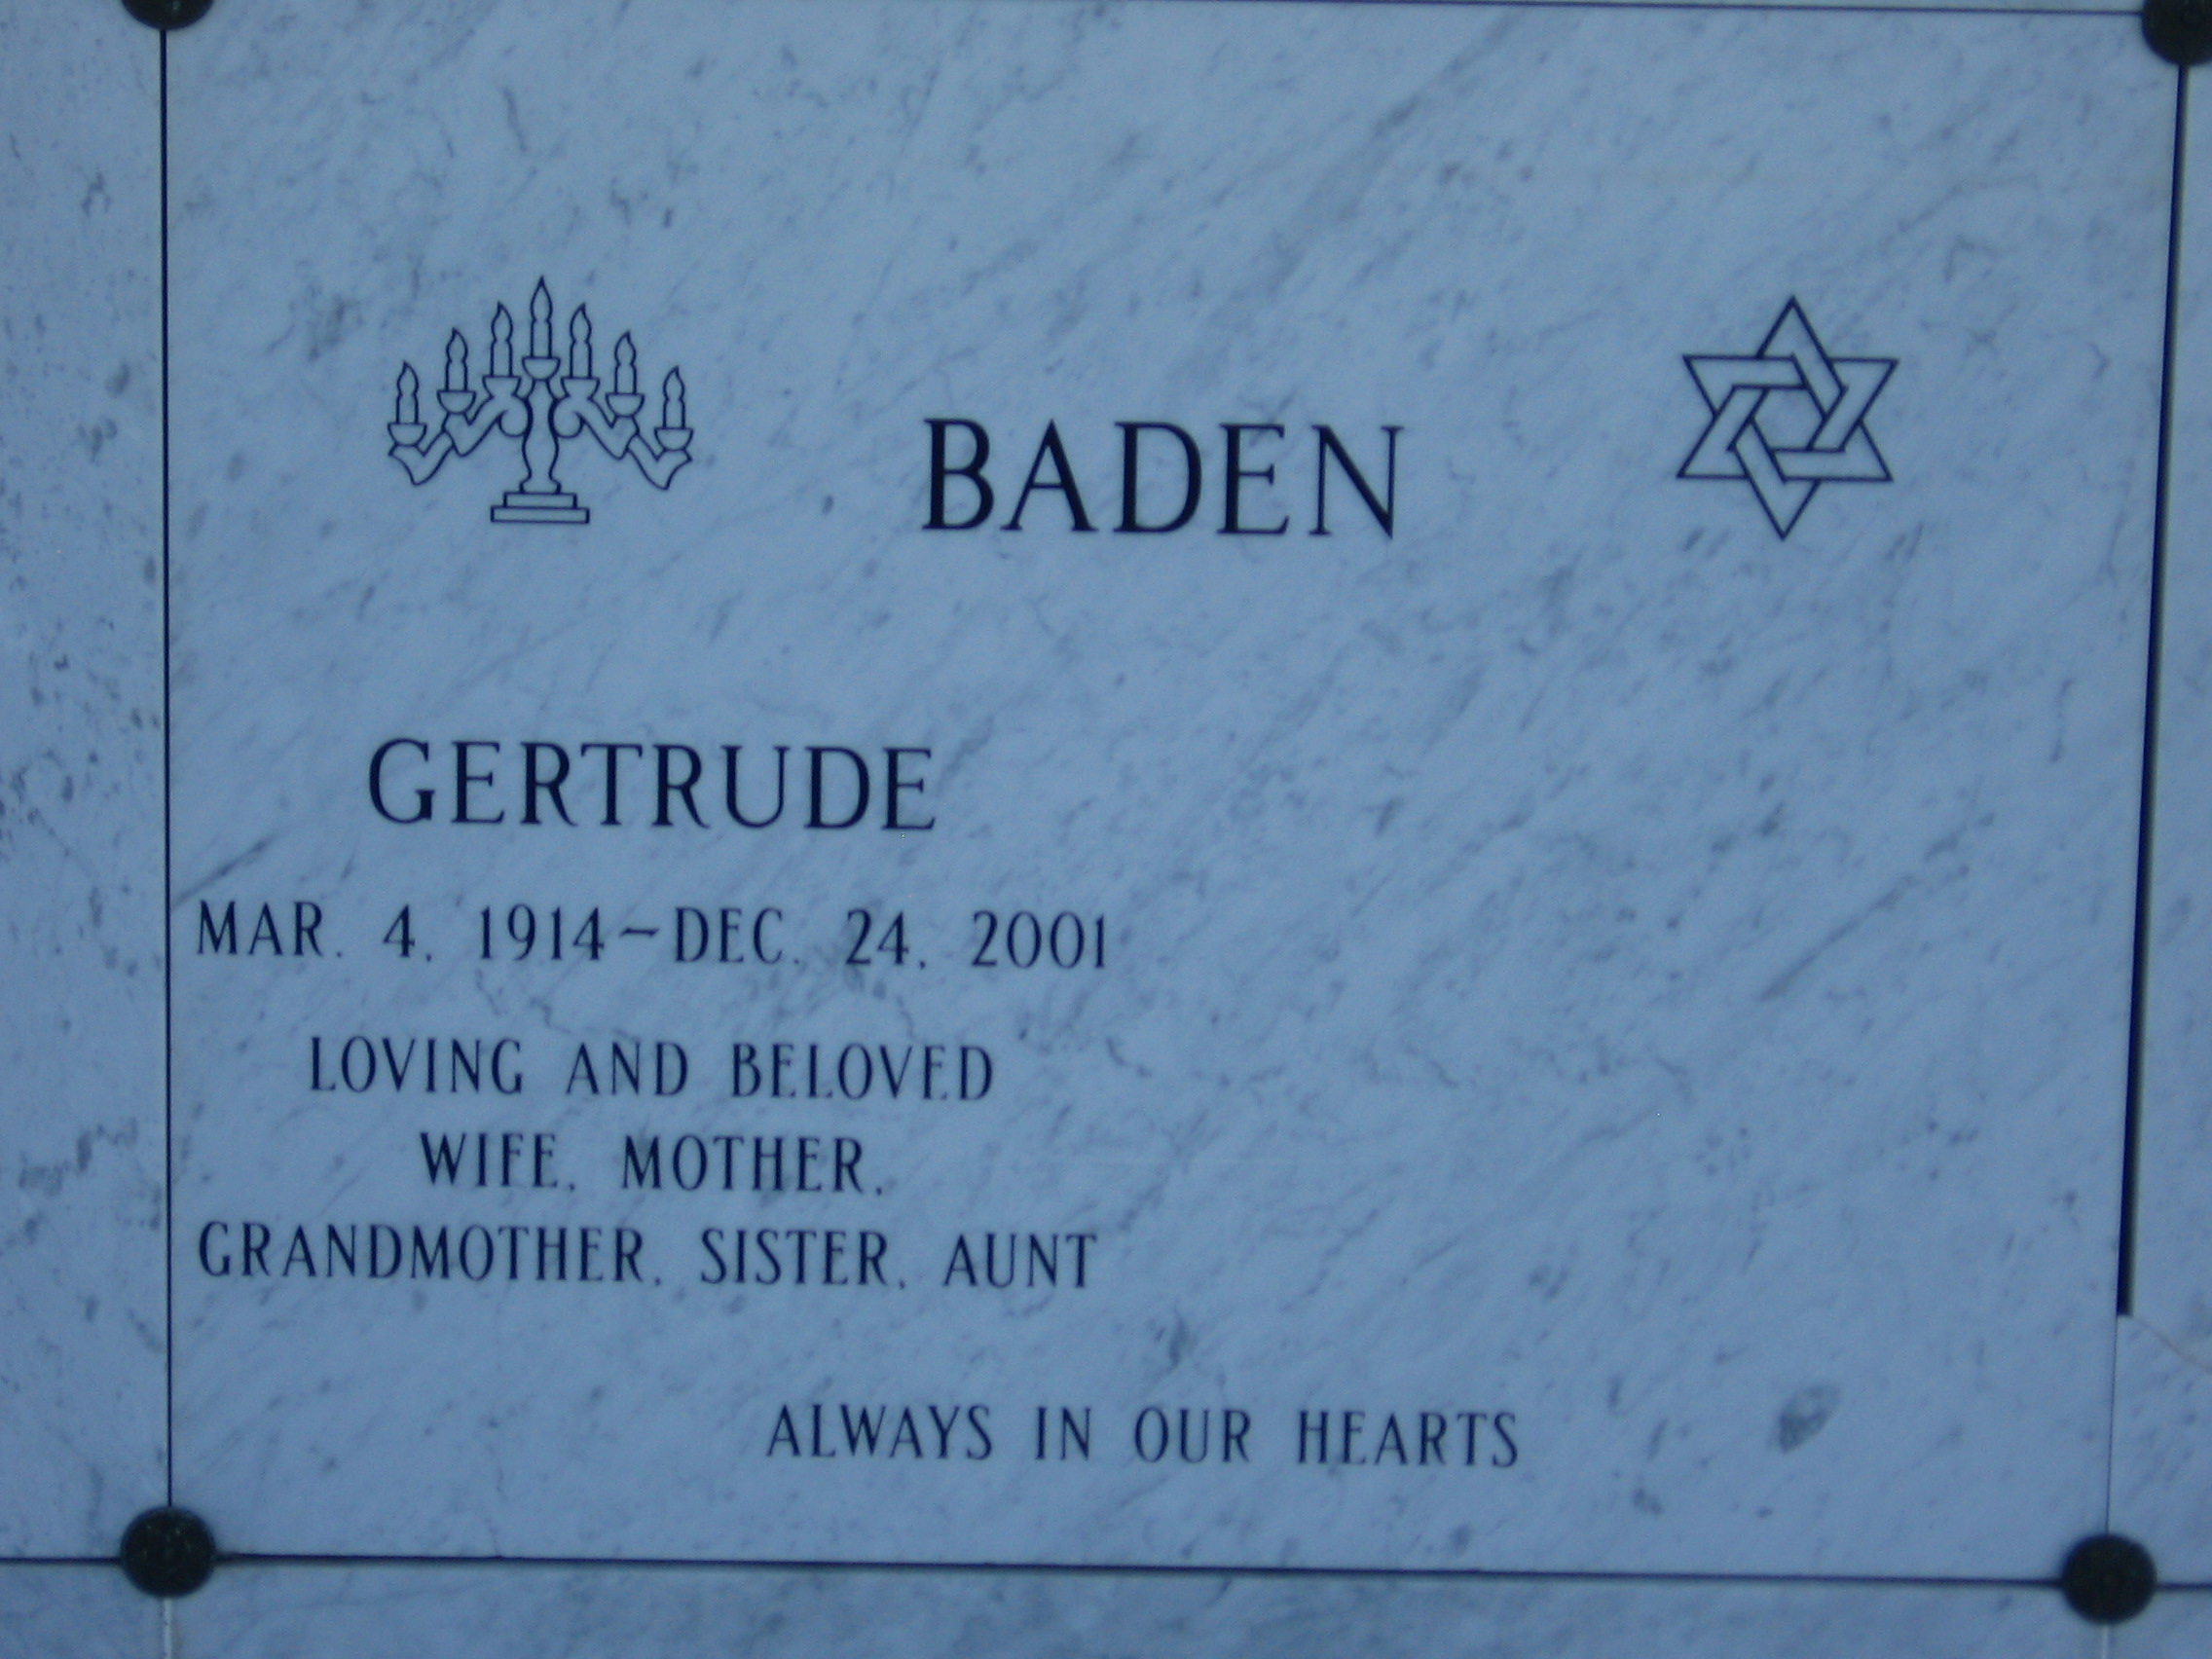 Gertrude Baden